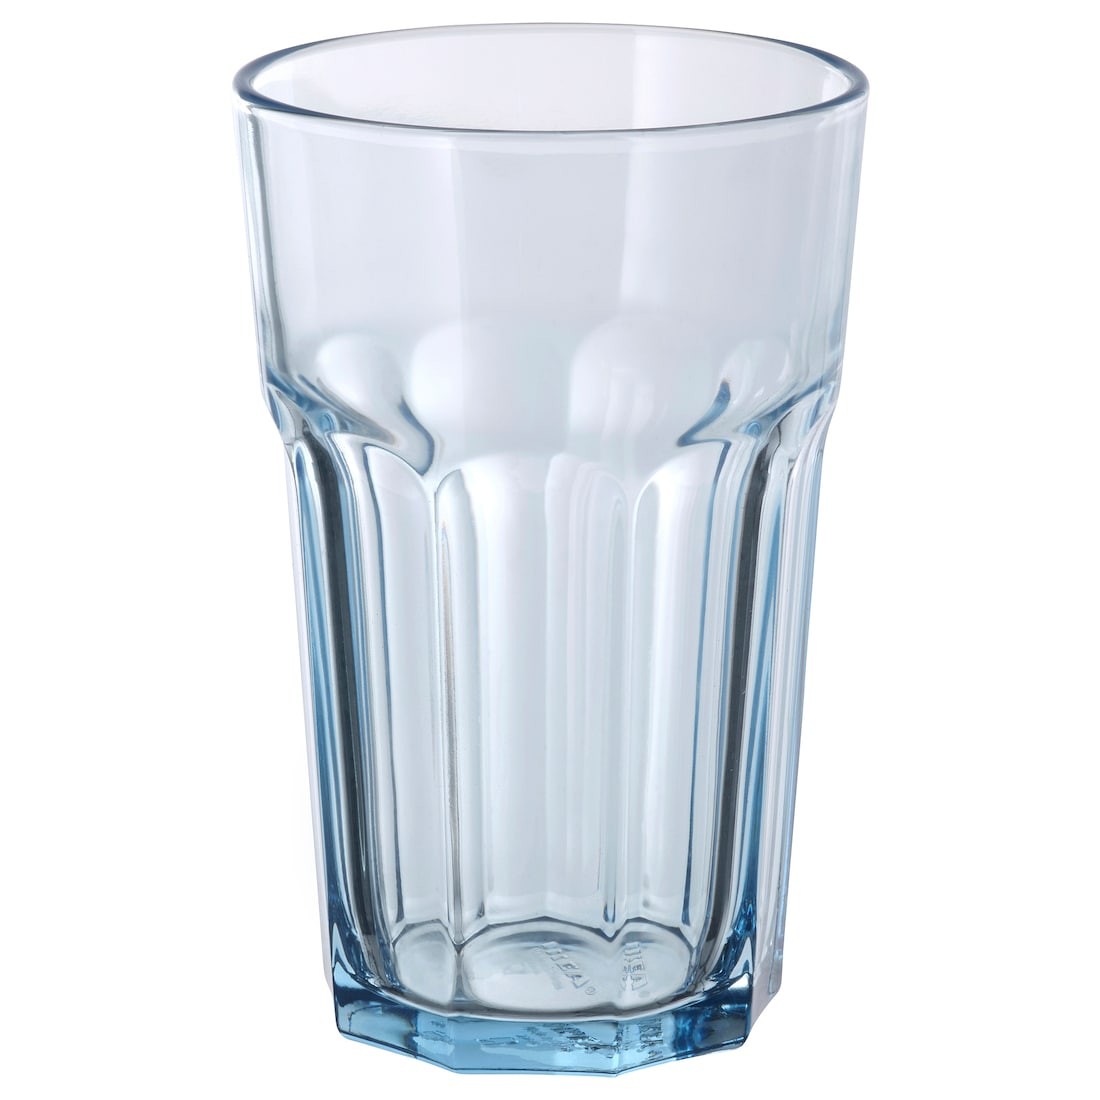 POKAL Склянка, світло-блакитний, 35 cl